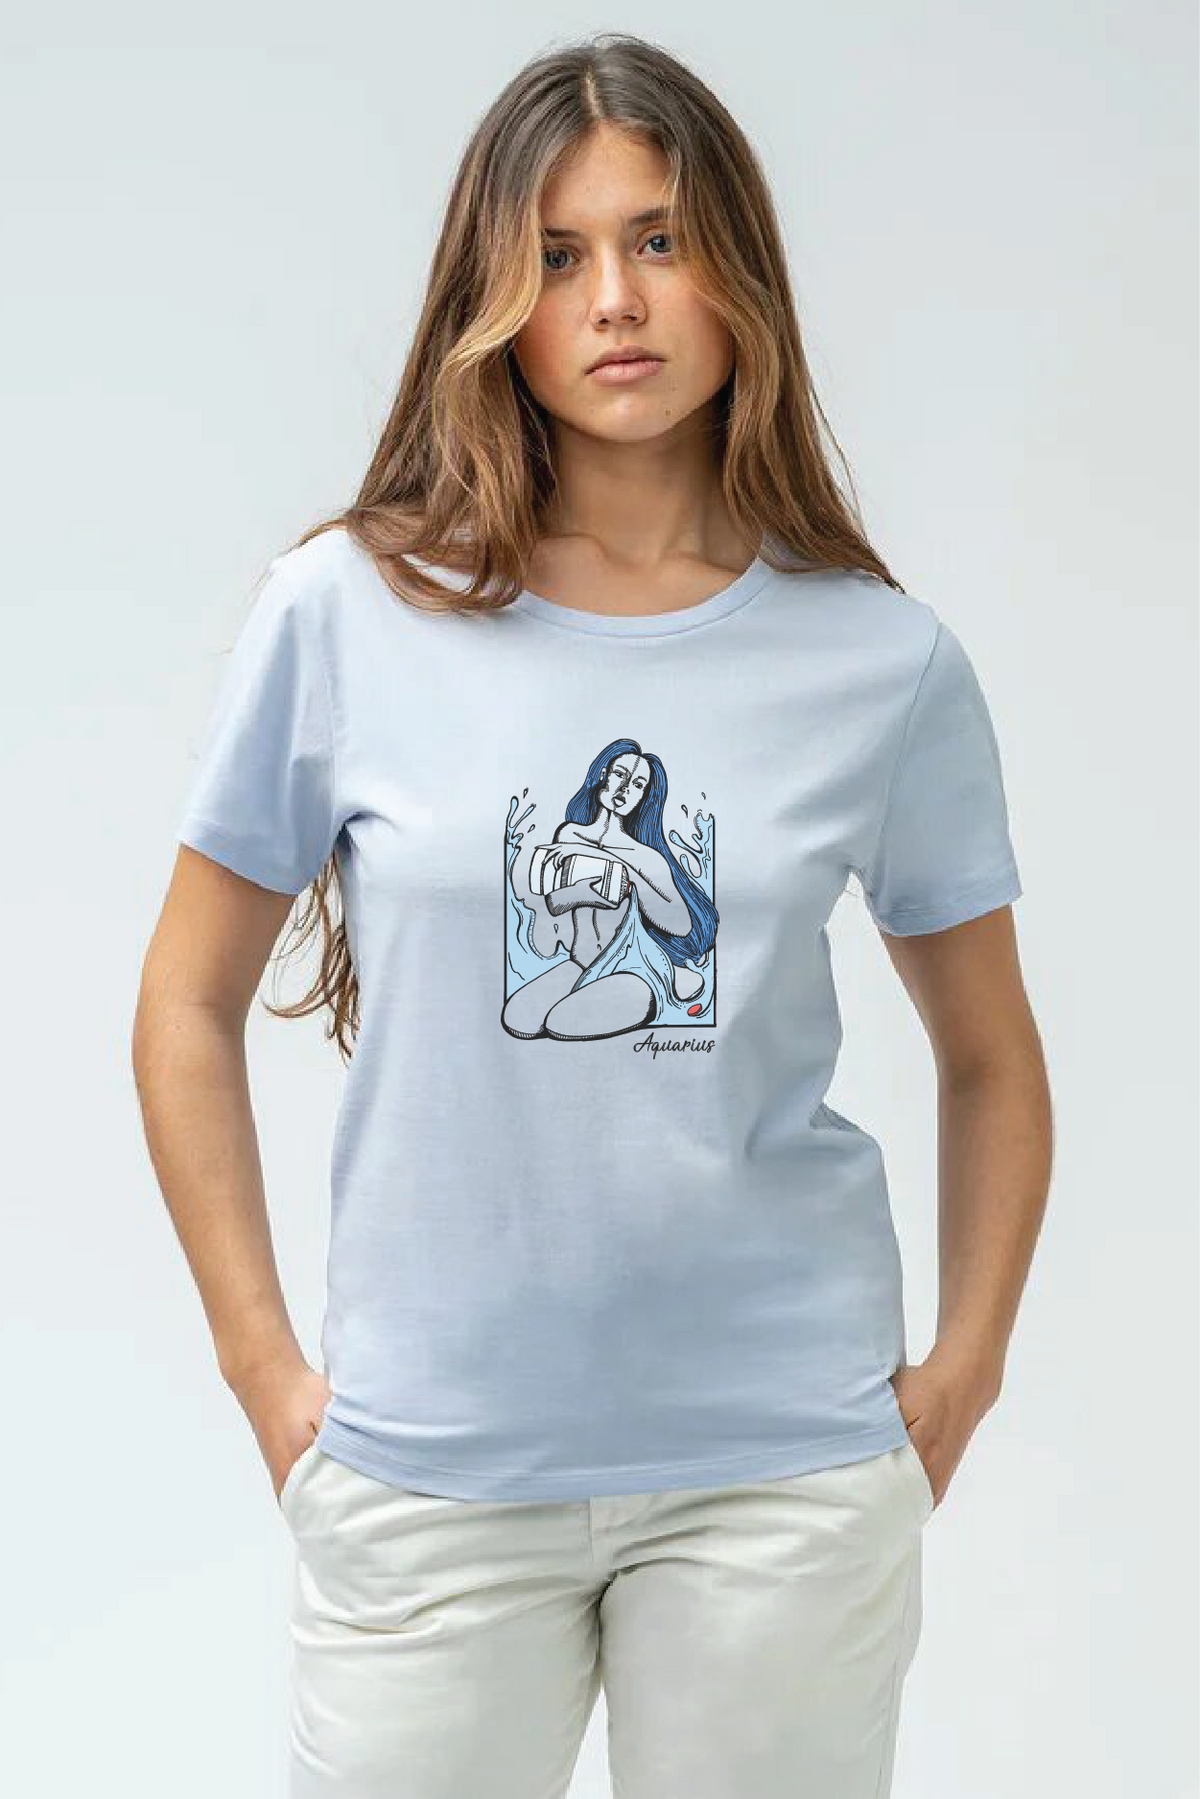 Aquarius - Unisex Organic Cotton T-Shirt